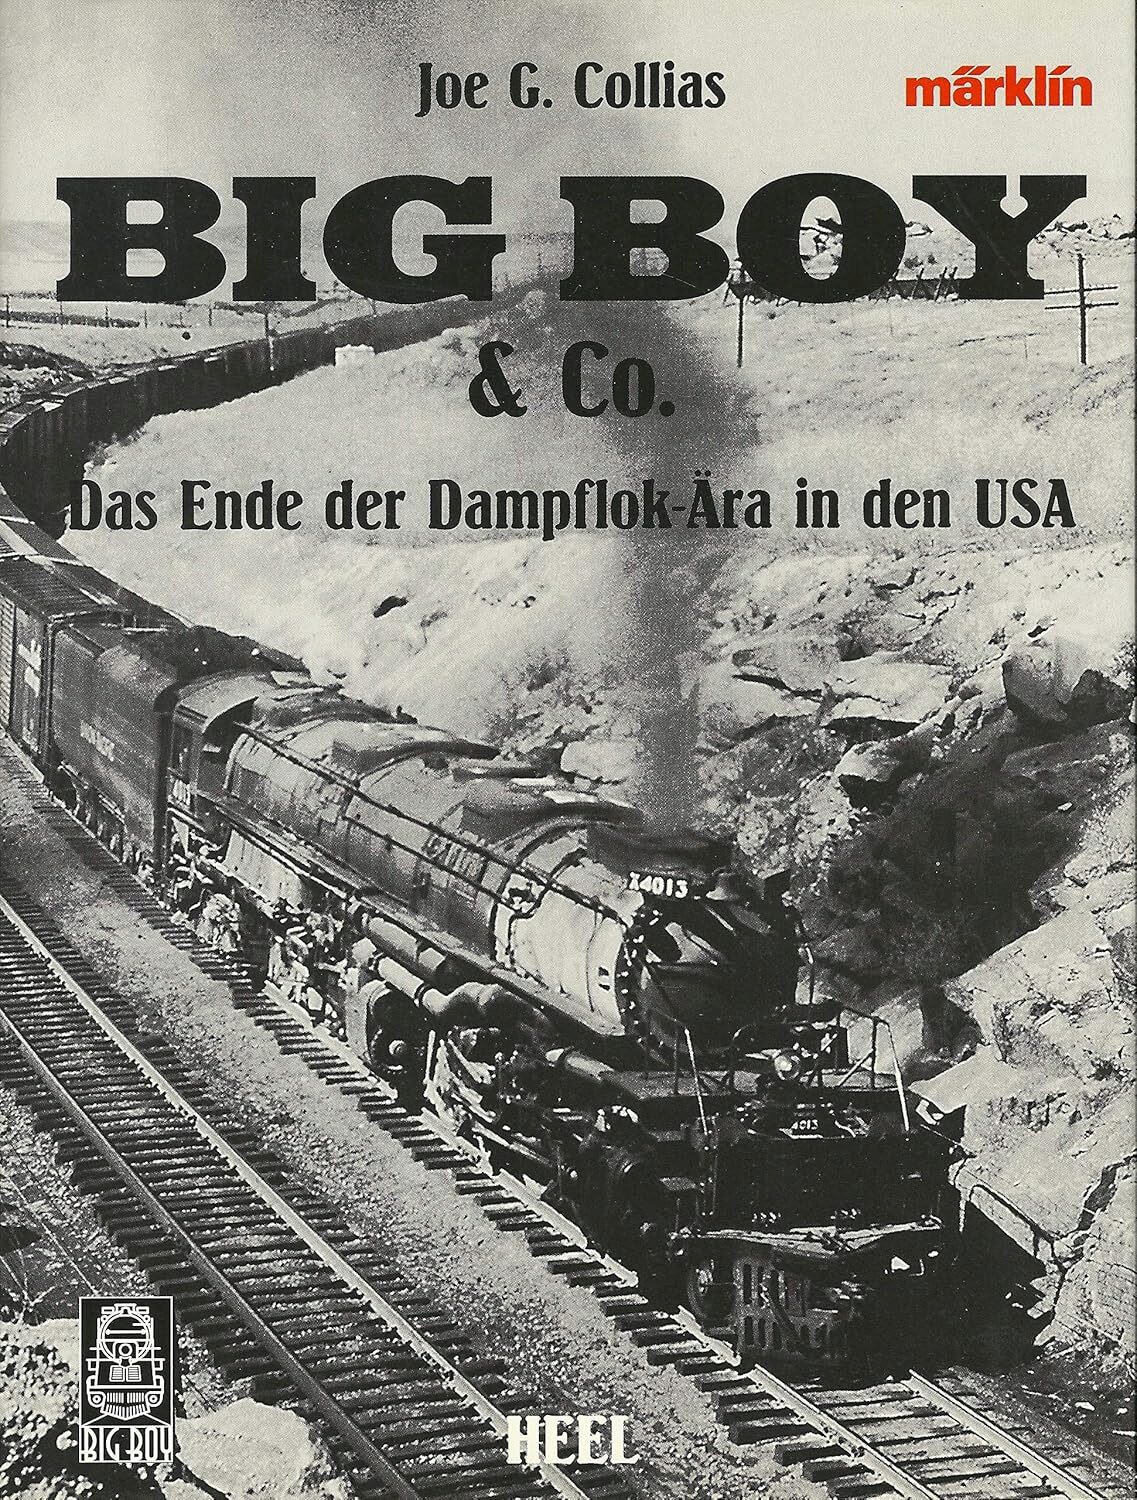 Buch B-1402 *Big Boy & Co. Das Ende der Dampflok-Ära in den USA